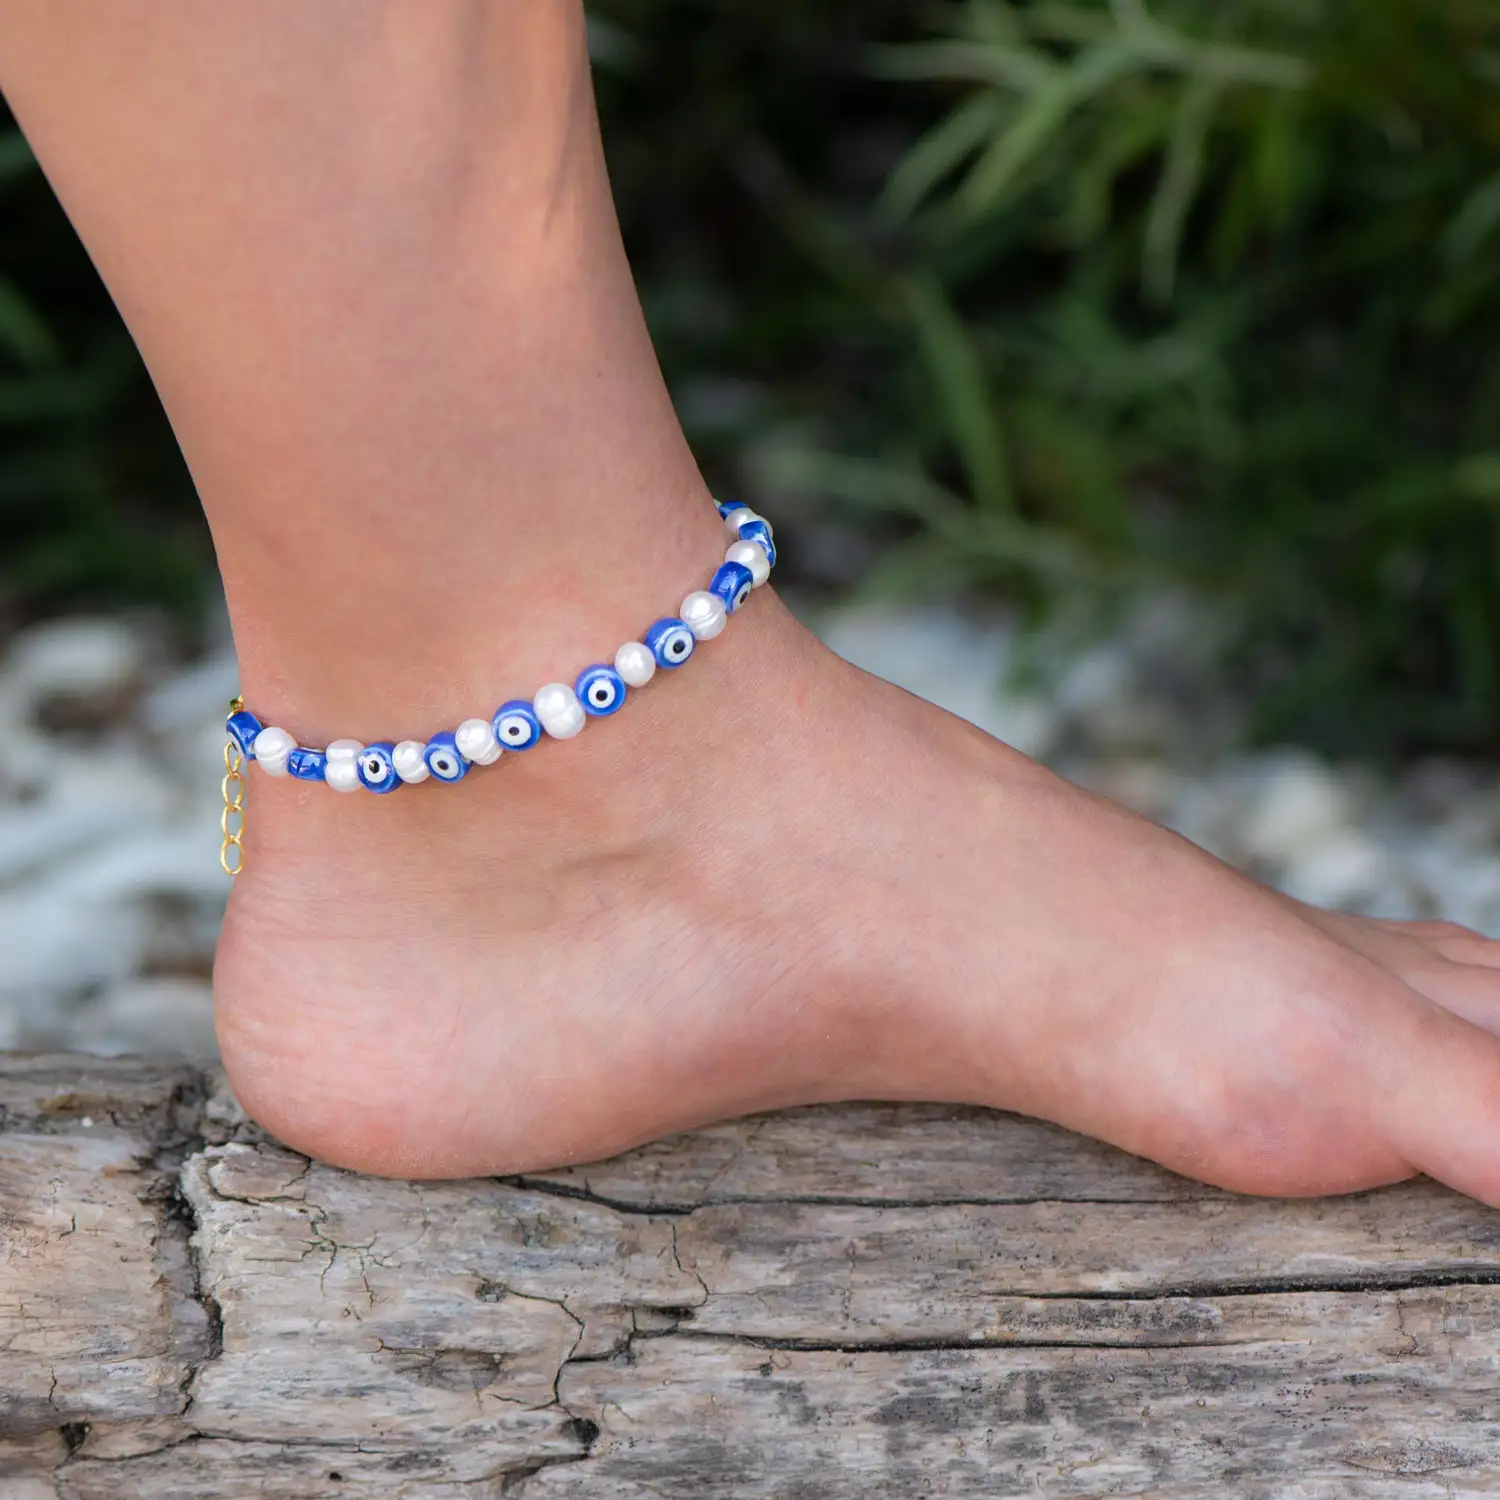 Rose Soleil – Shop online – cavigliere da donna – cavigliere estive – cavigliera per l’estate con occhio greco – Blue Eye